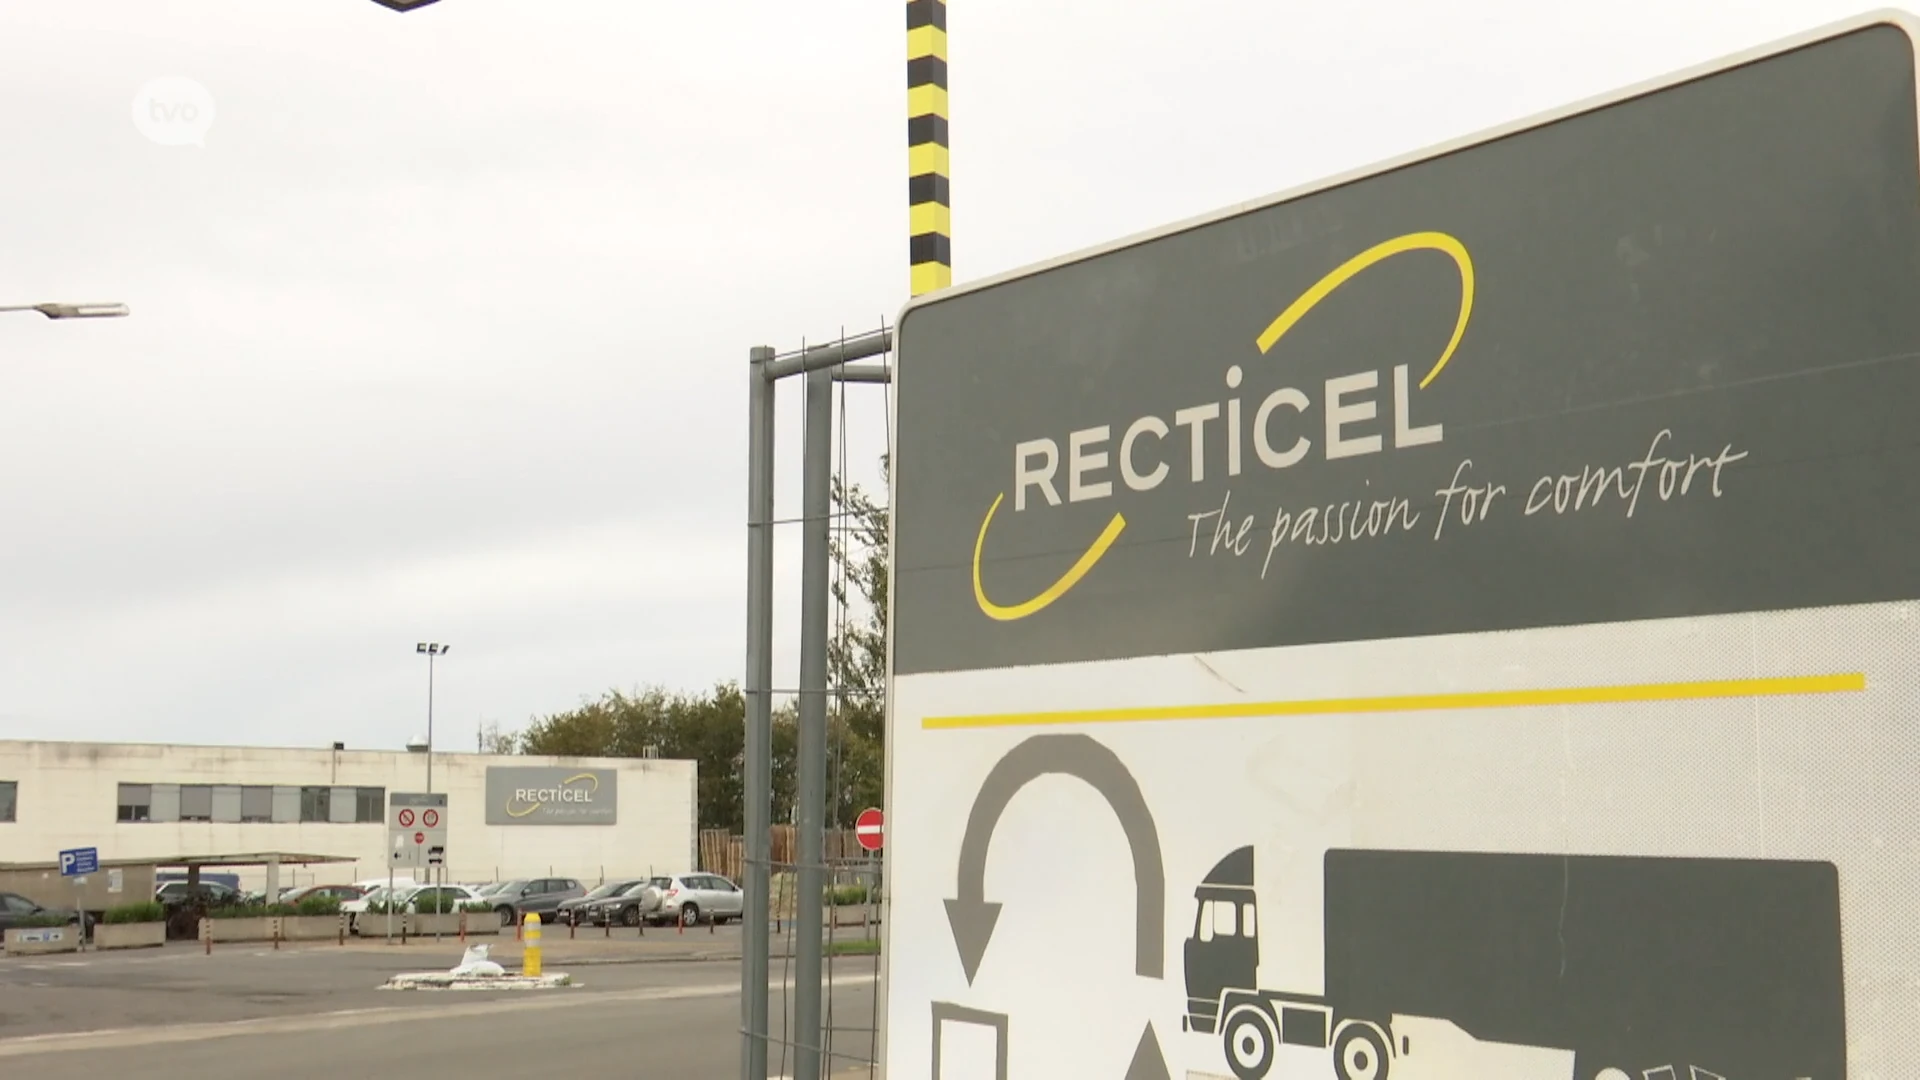 Verdwijnt bedrijfsnaam Recticel na bijna 60 jaar uit straatbeeld van Wetteren?